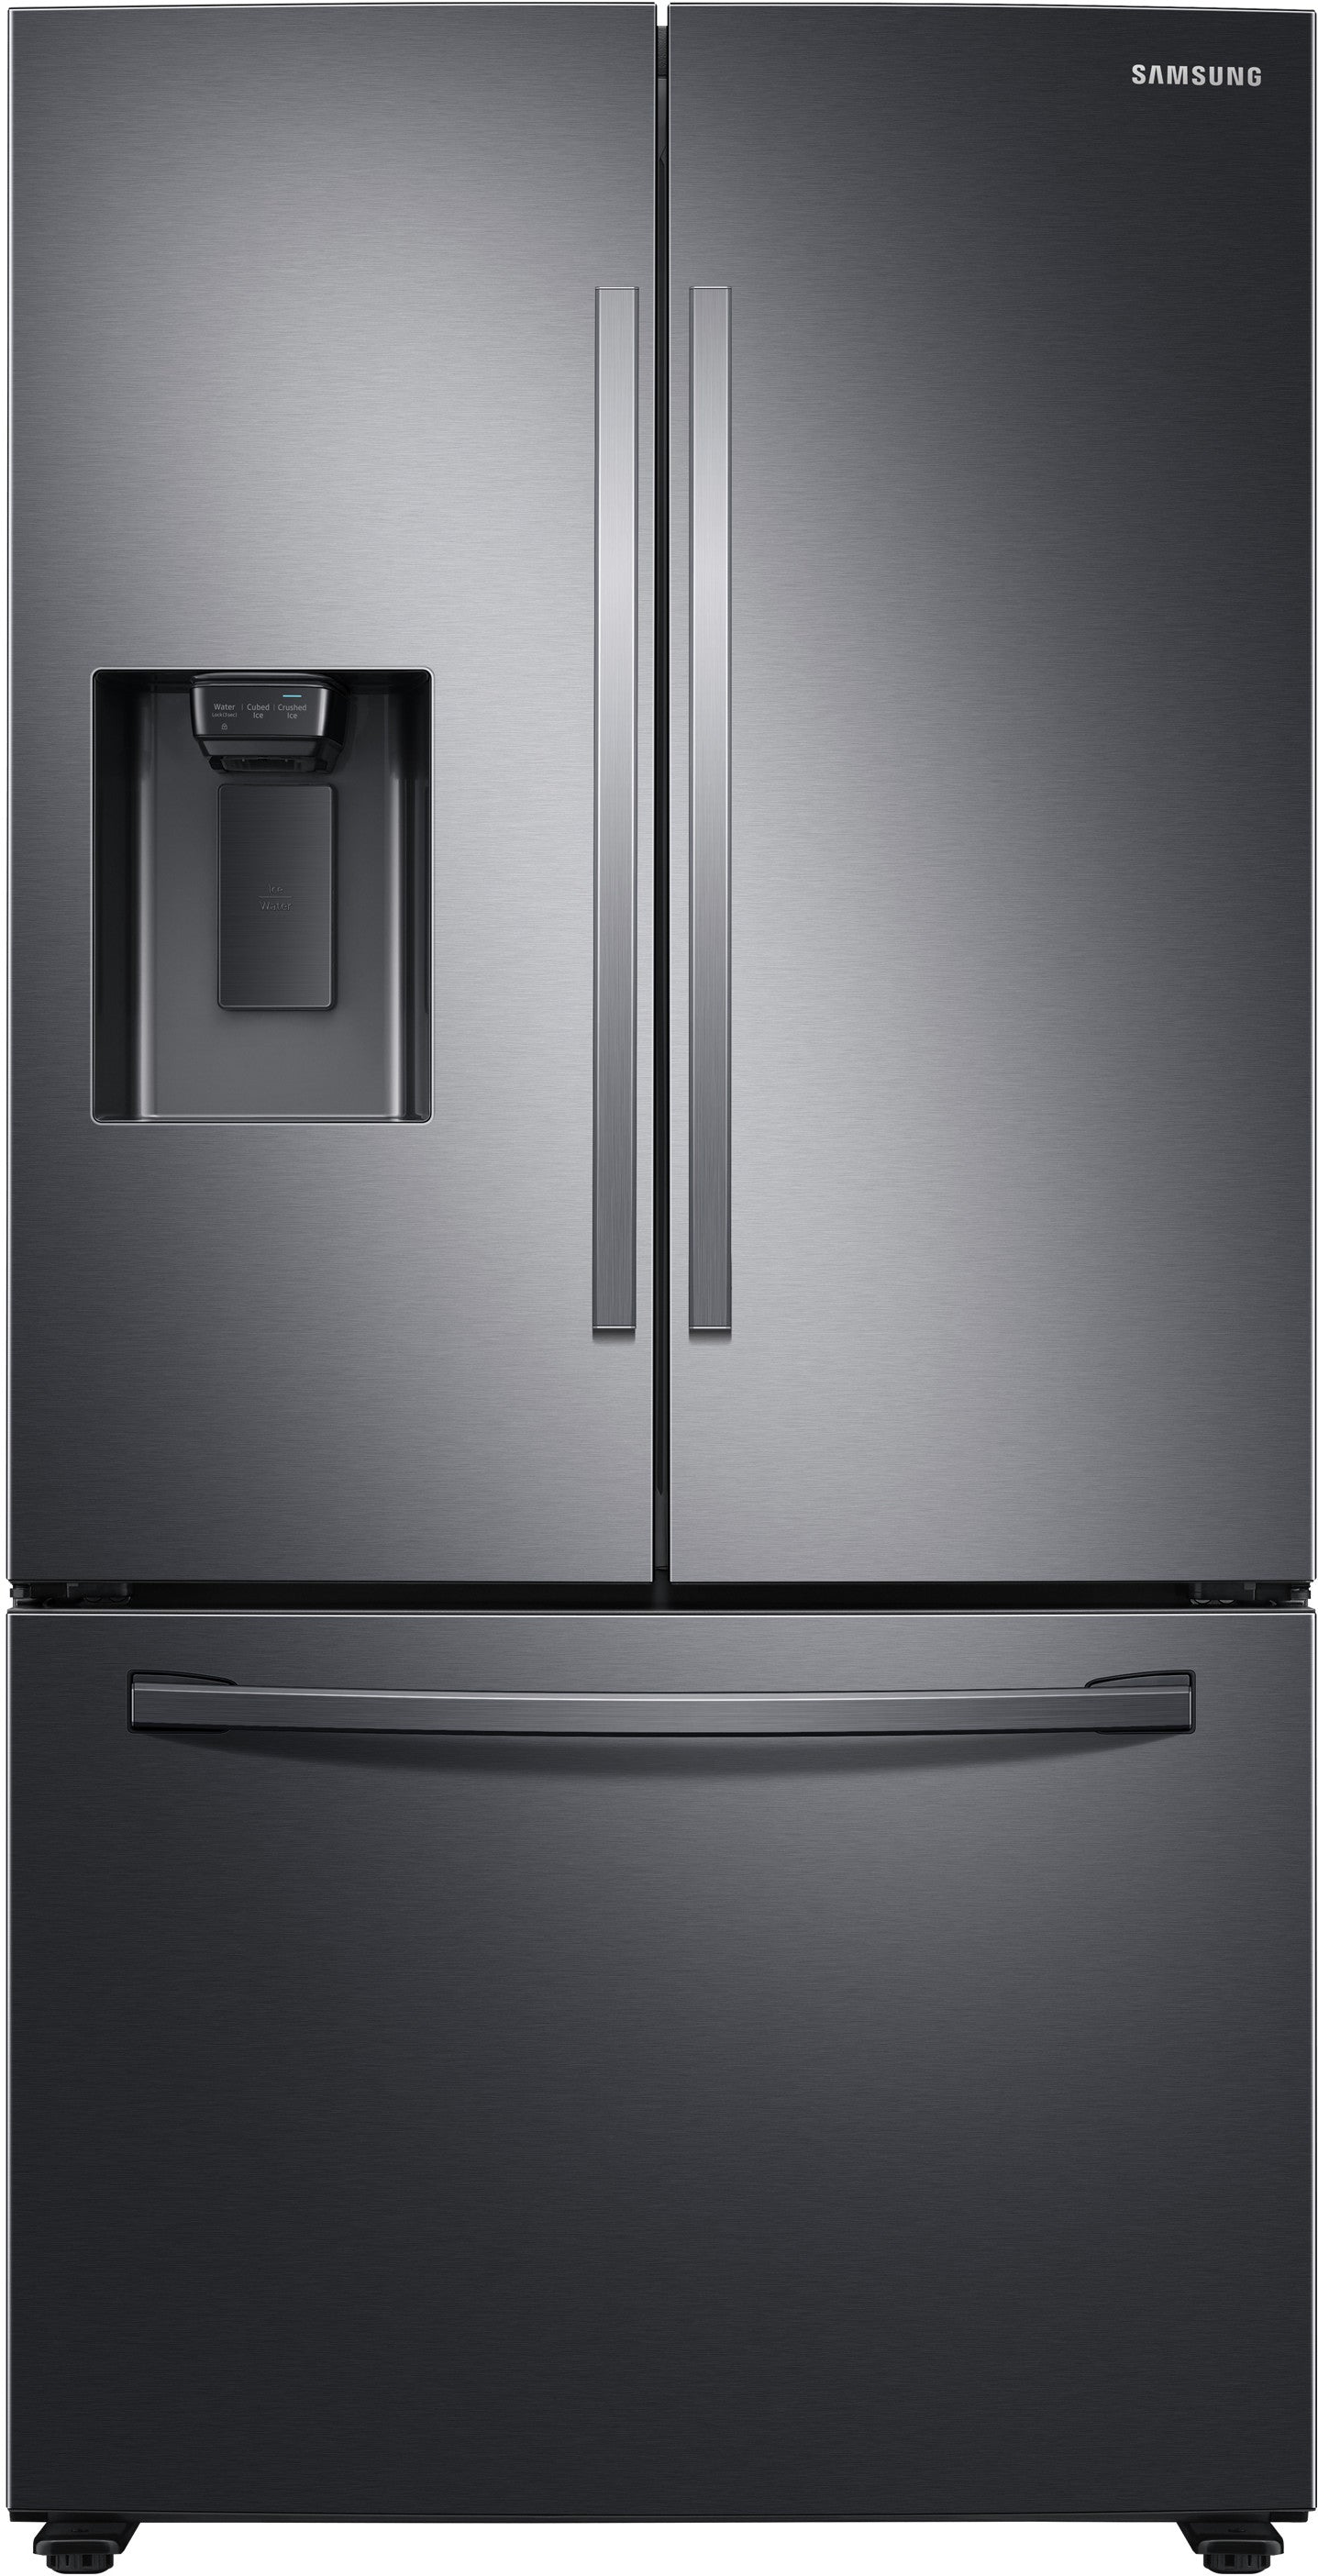 Samsung RF27T5201SG/AA 27 Cu. Ft. Large Capacity 3-Door French Door Refrigerator